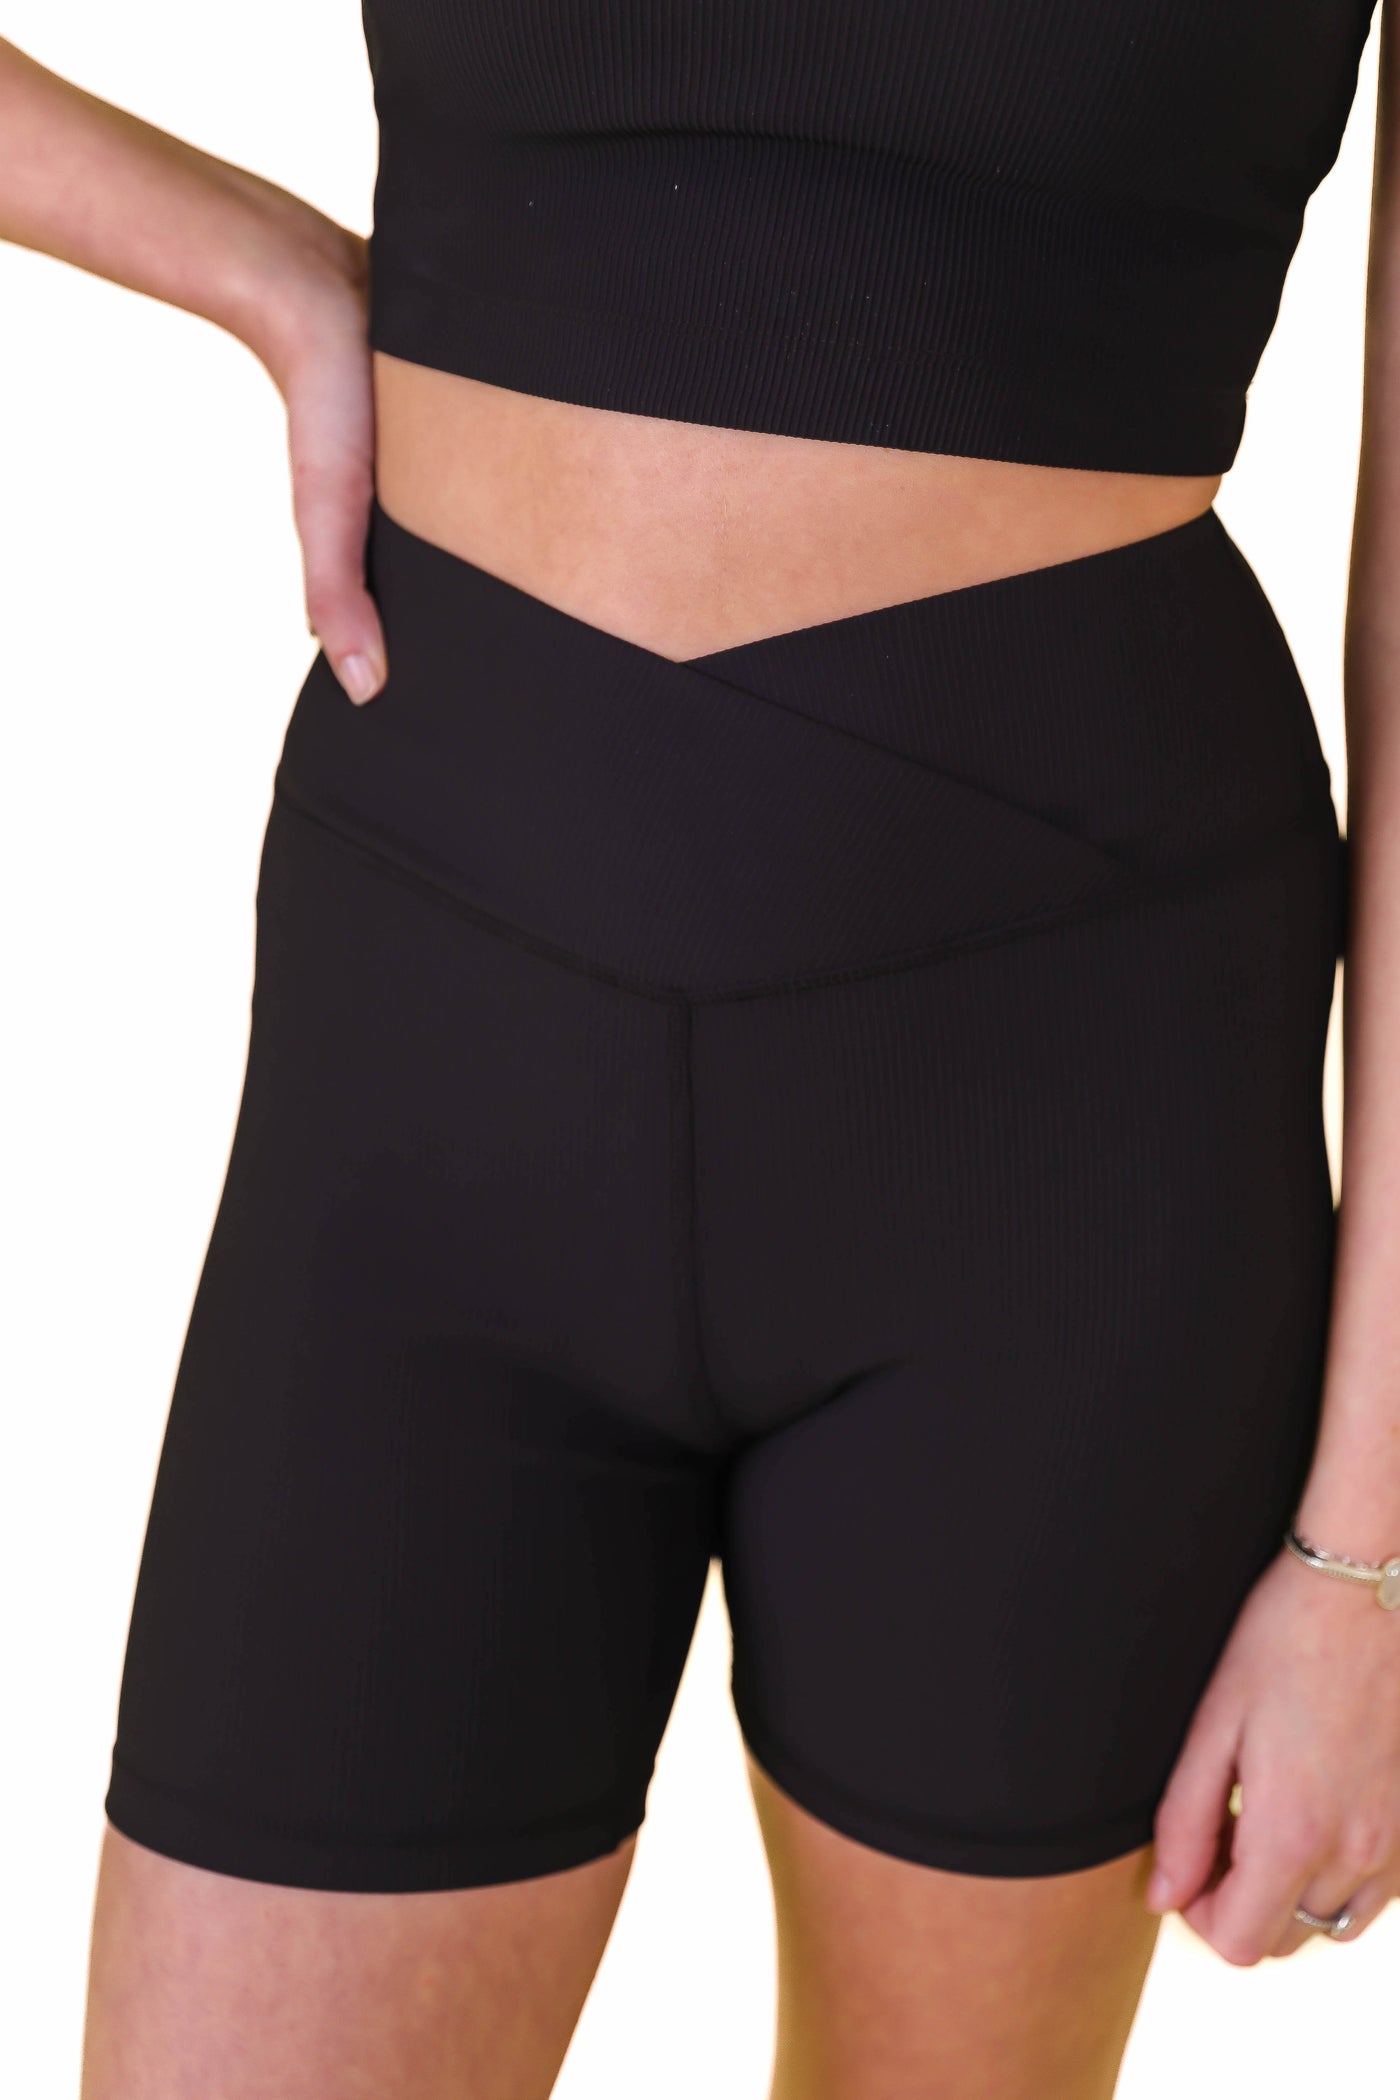 Black Crossover Biker Shorts- Black Ribbed Biker Shorts- Affordable Women's Workout Wear